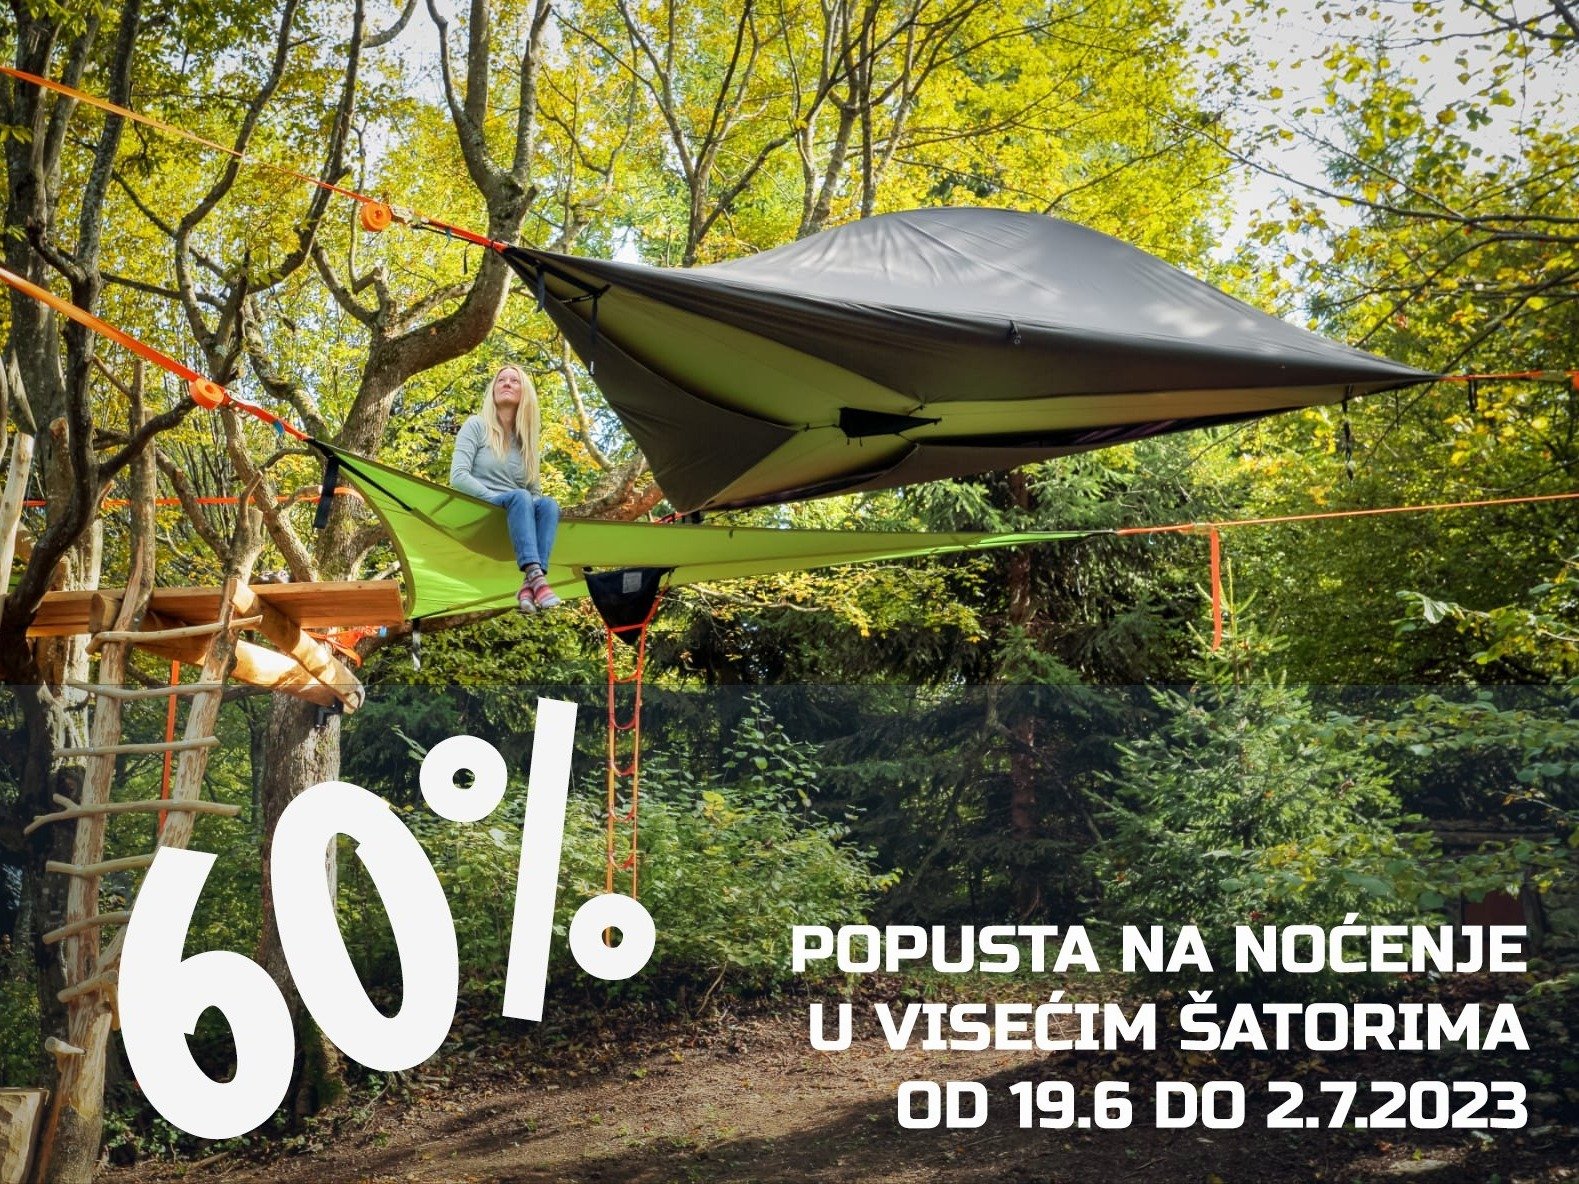 60% popusta na viseće šatore